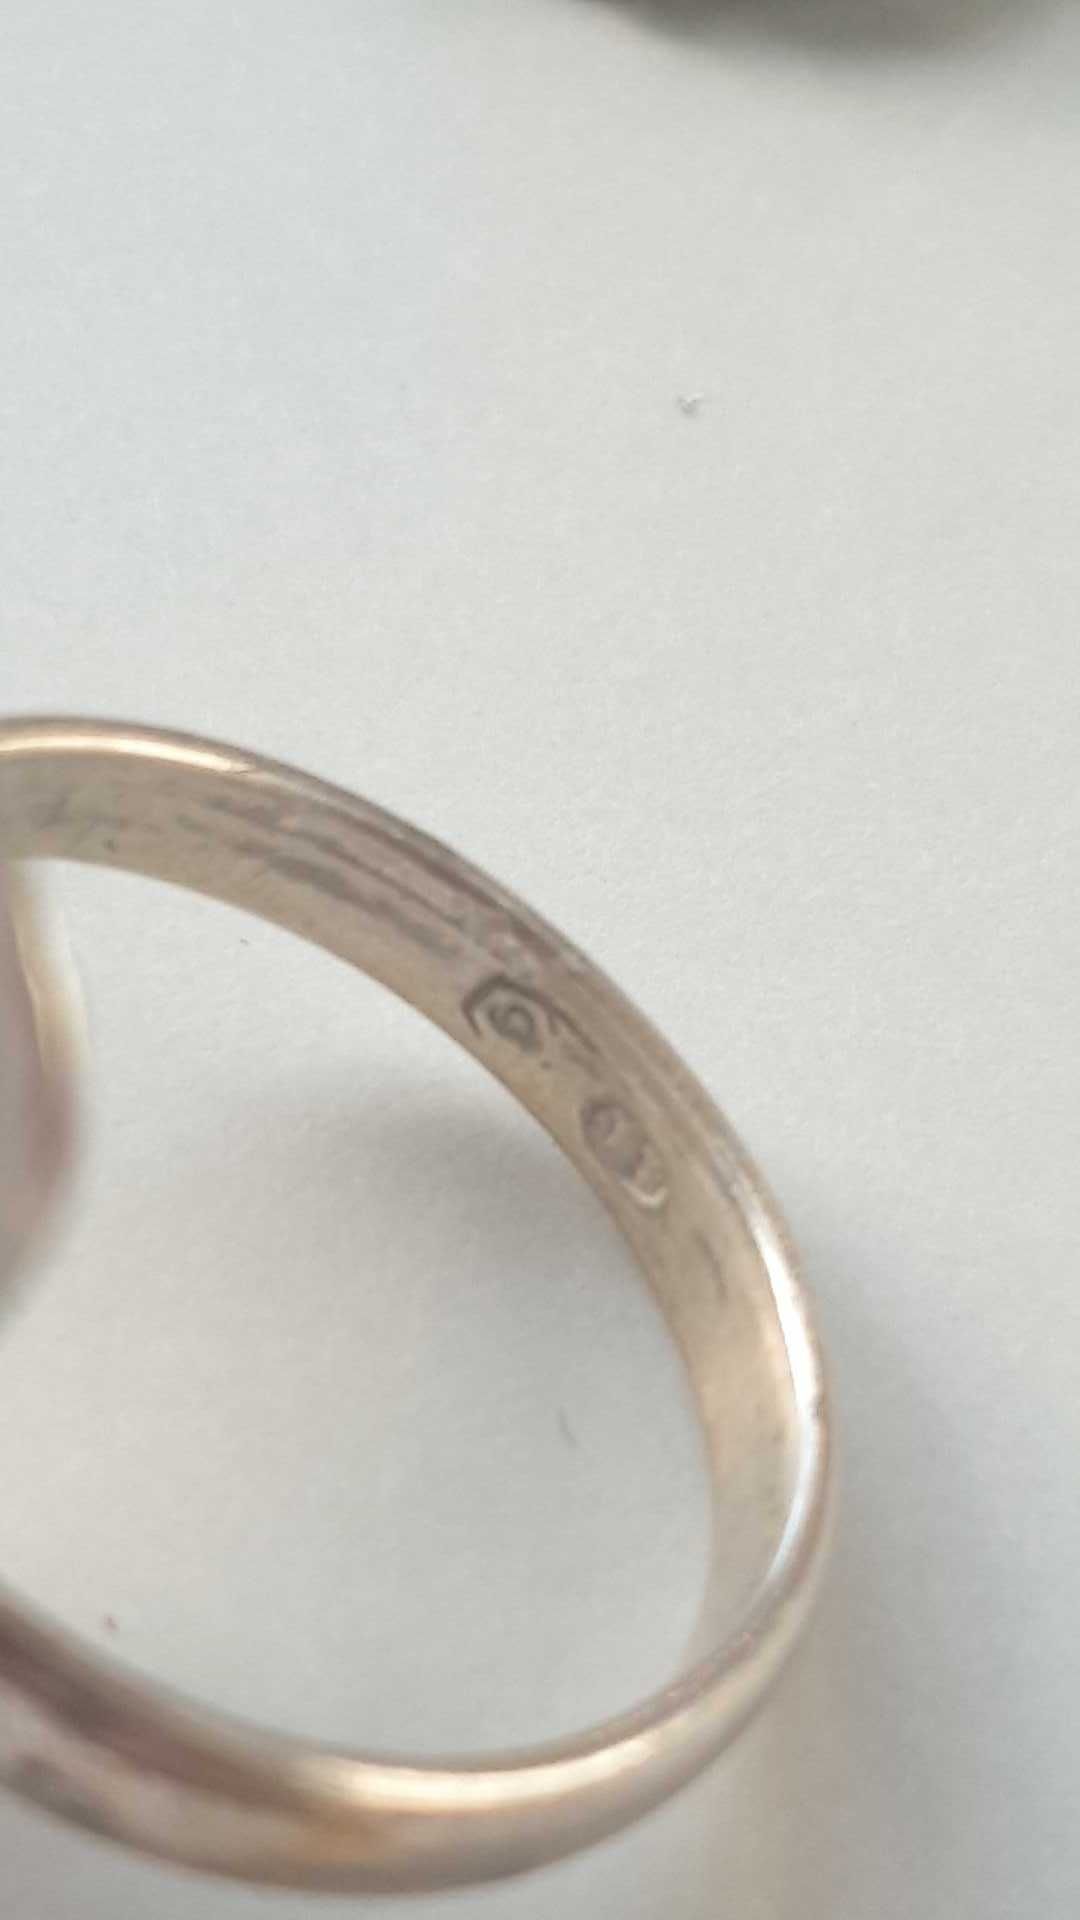 Srebrny pierścionek CJ centrala jubilerska próba przed 63